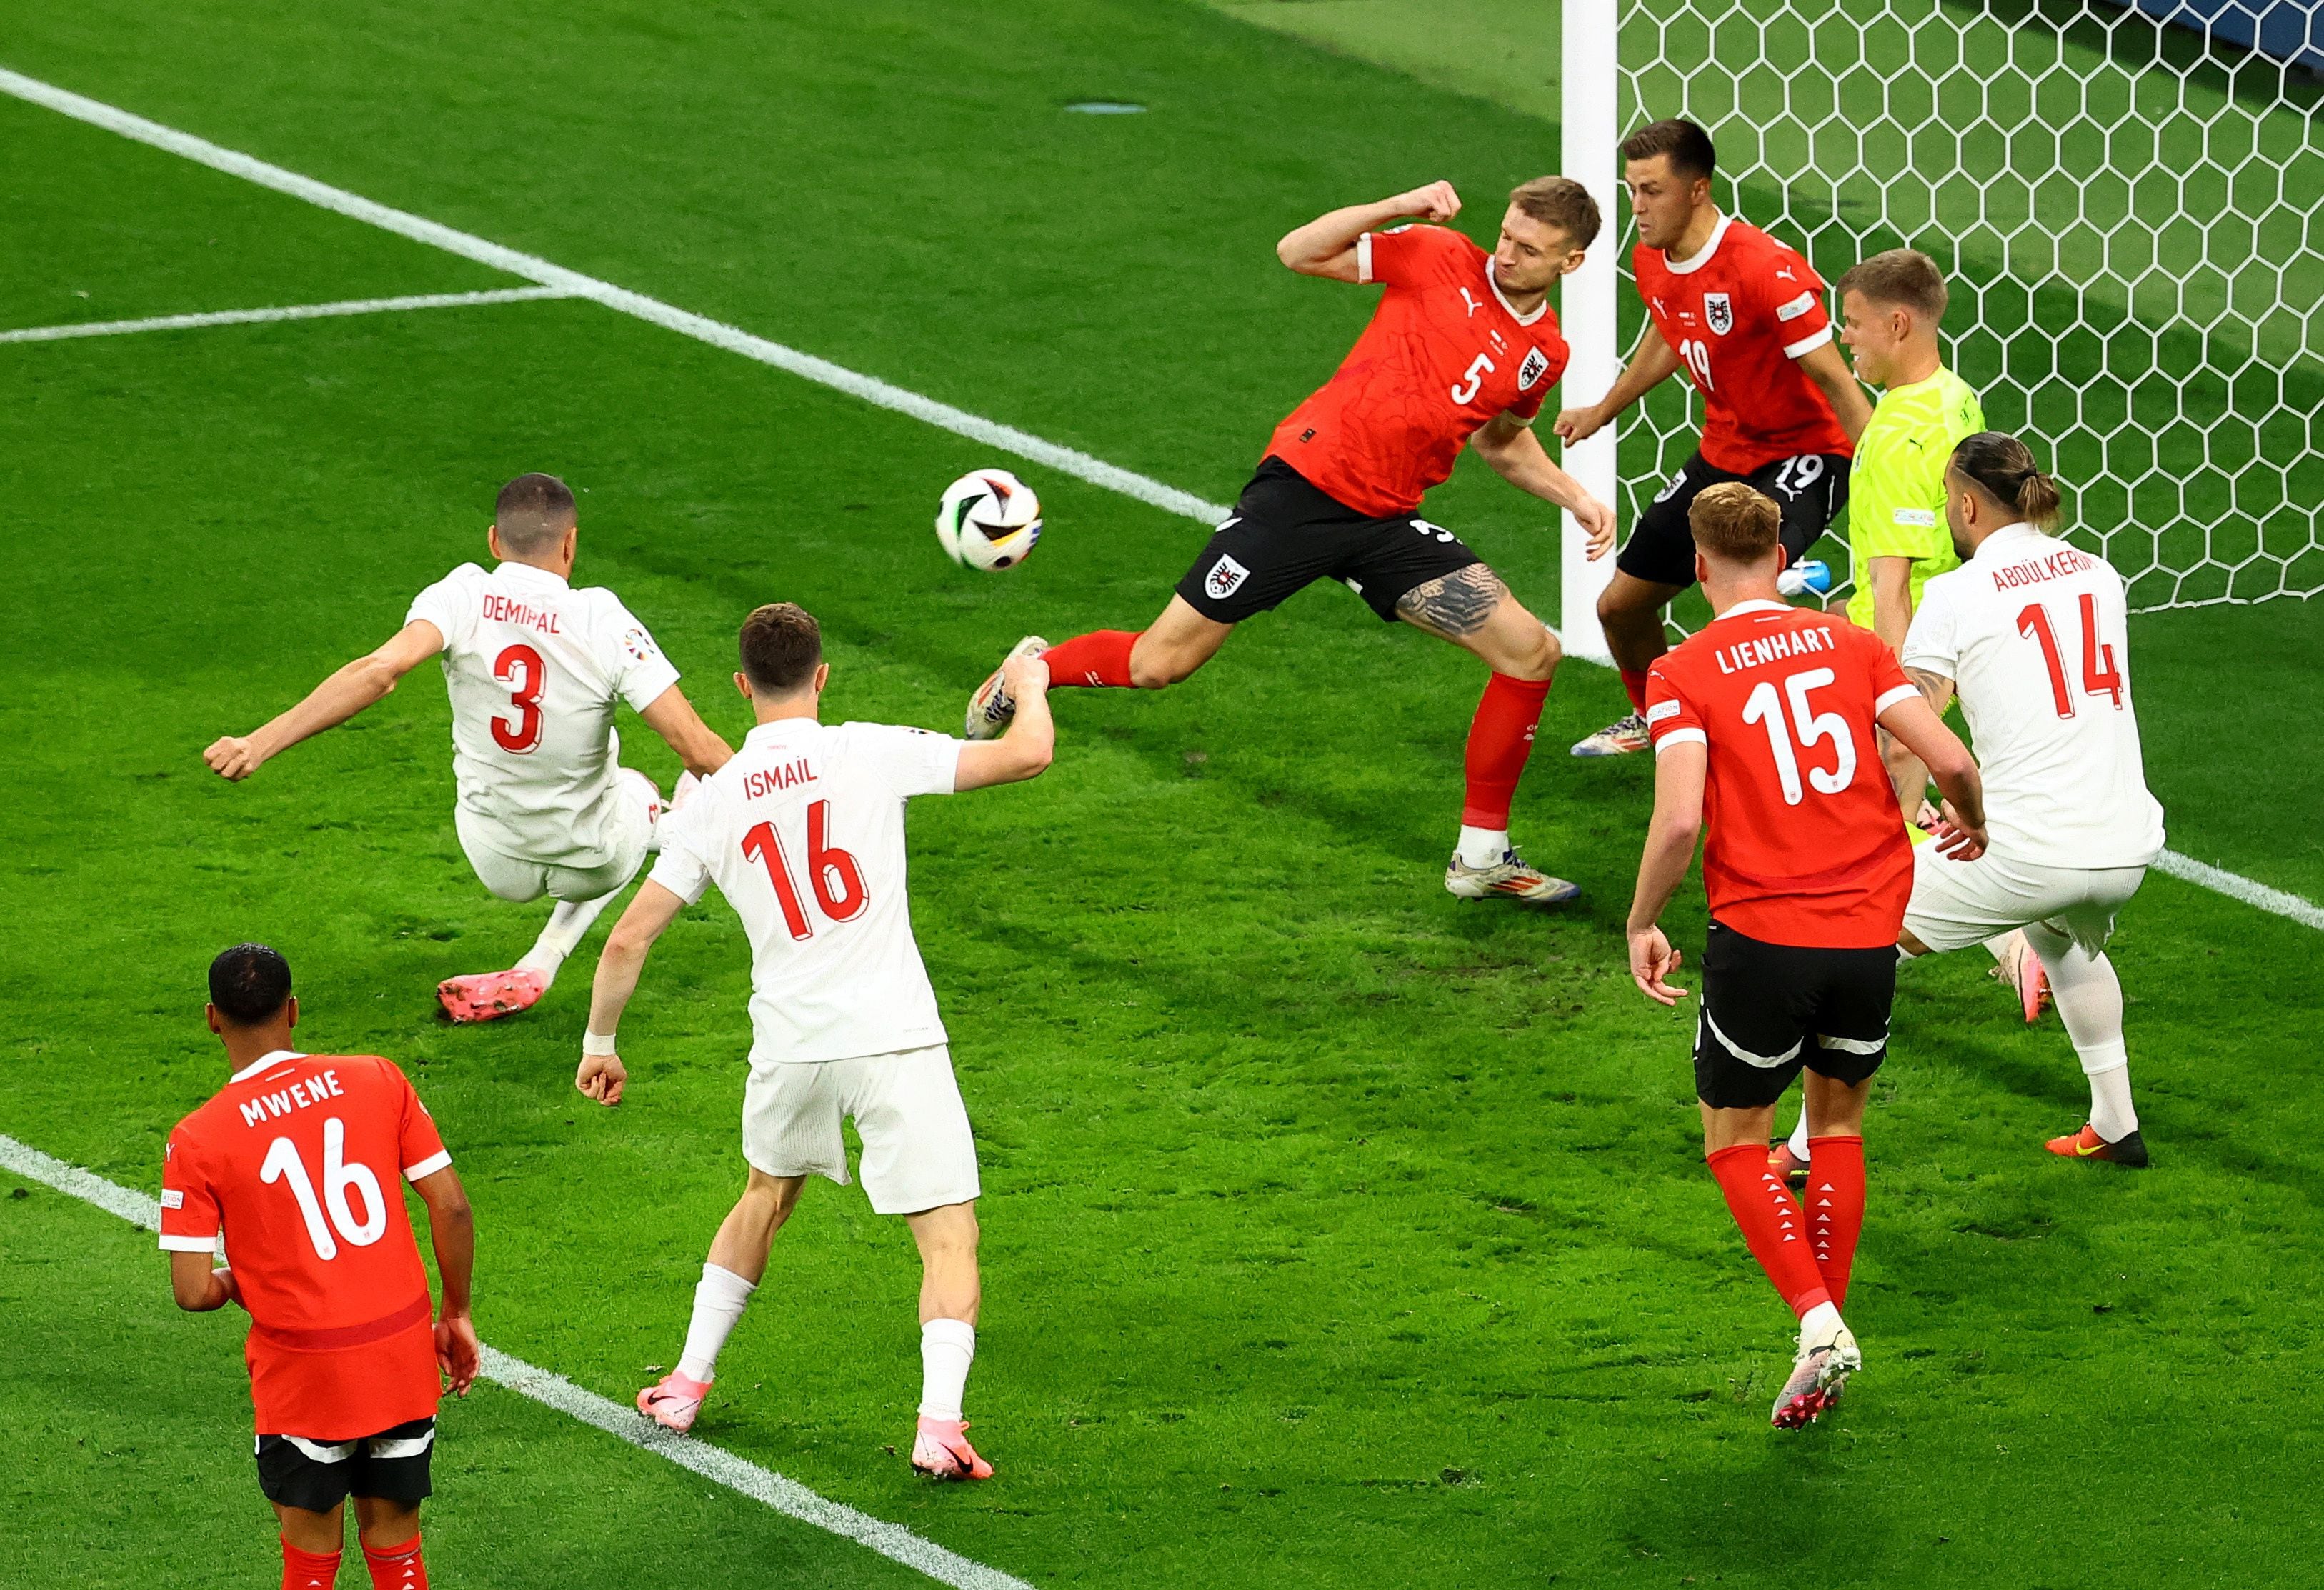 Austria – Turquía, en directo | La selección turca vence a la austriaca con un gol de Demiral en el primer minuto de juego